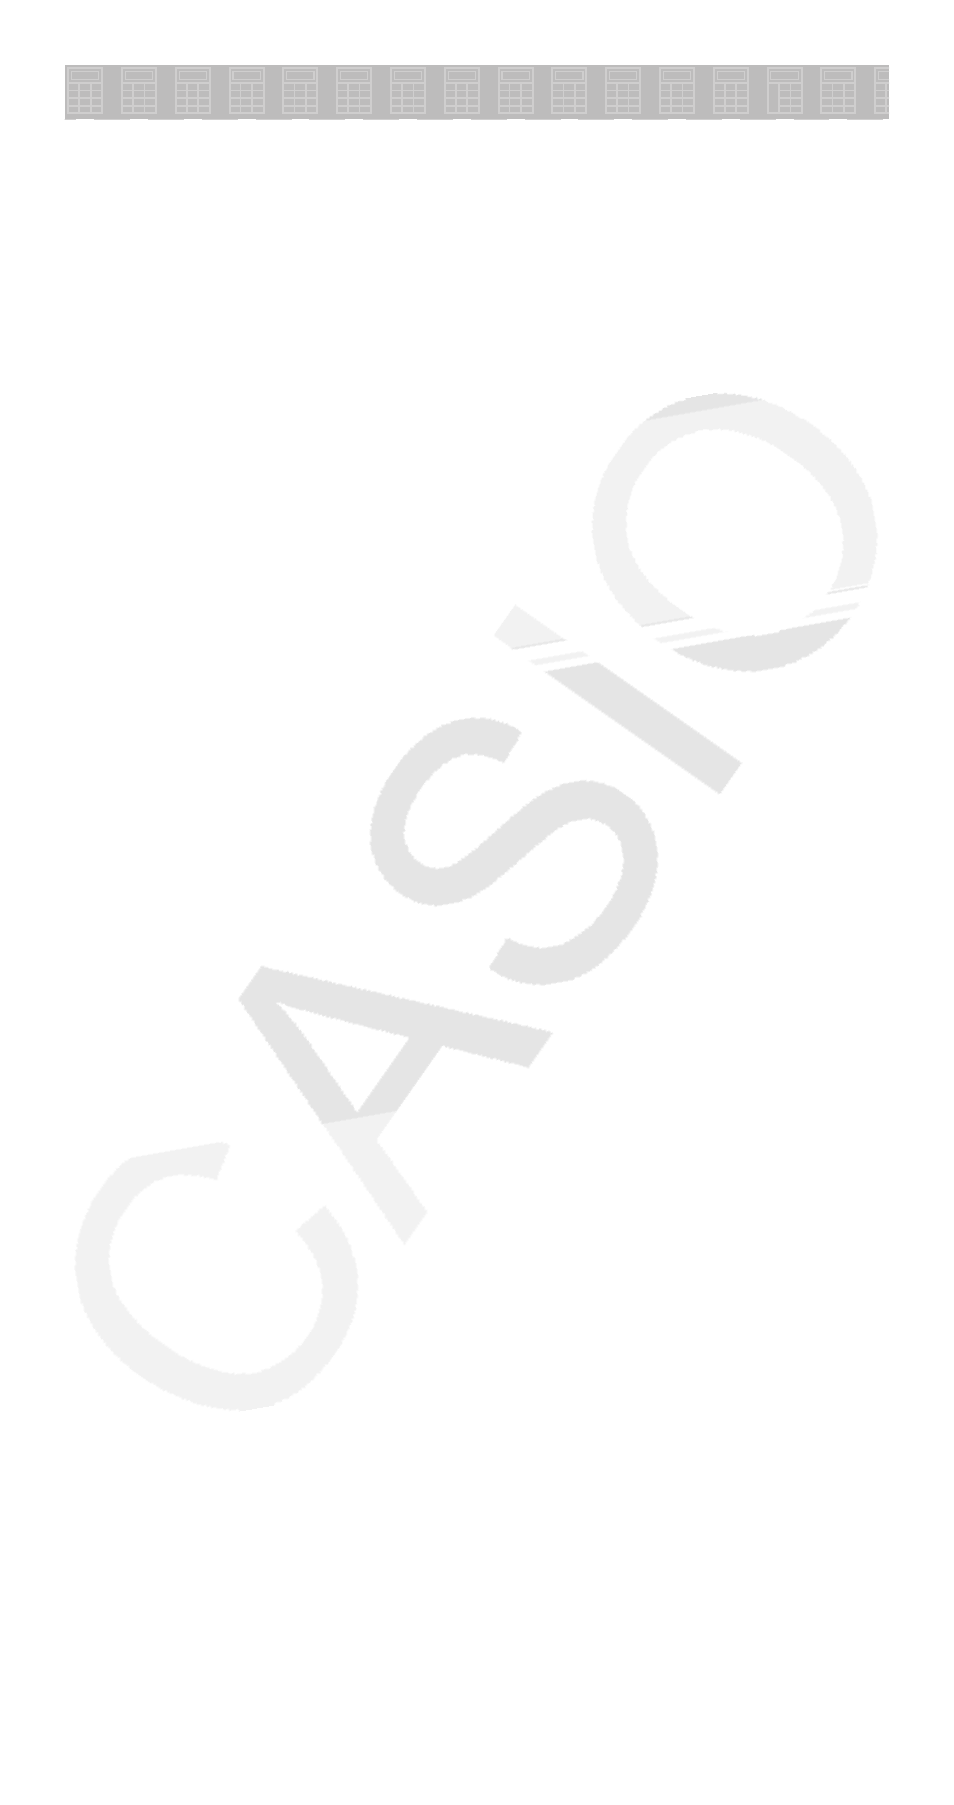 Método Separar vestir Casio FX-300MS Manual del usuario | Página 2 / 40 | También para: FX-100MS,  fx-570MS, fx-991MS, fx-115MS, fx-95MS, fx-220PLUS, fx-350MS, fx-82MS, FX-82SX  PLUS, fx-85MS